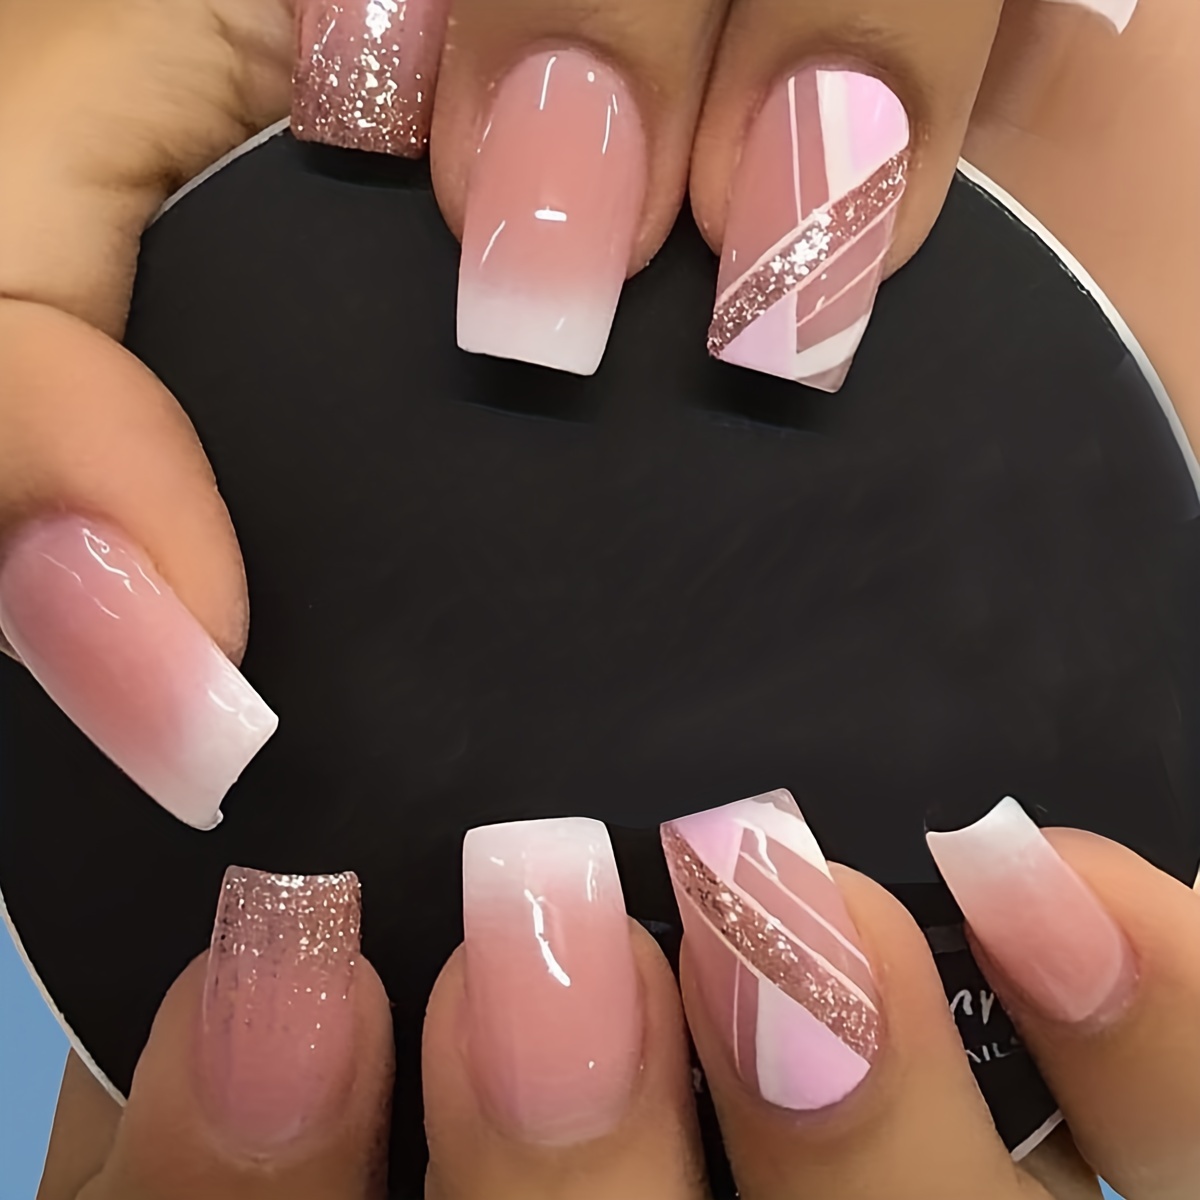 Alivia Nails - Glitter ombré nails ✨ | Facebook